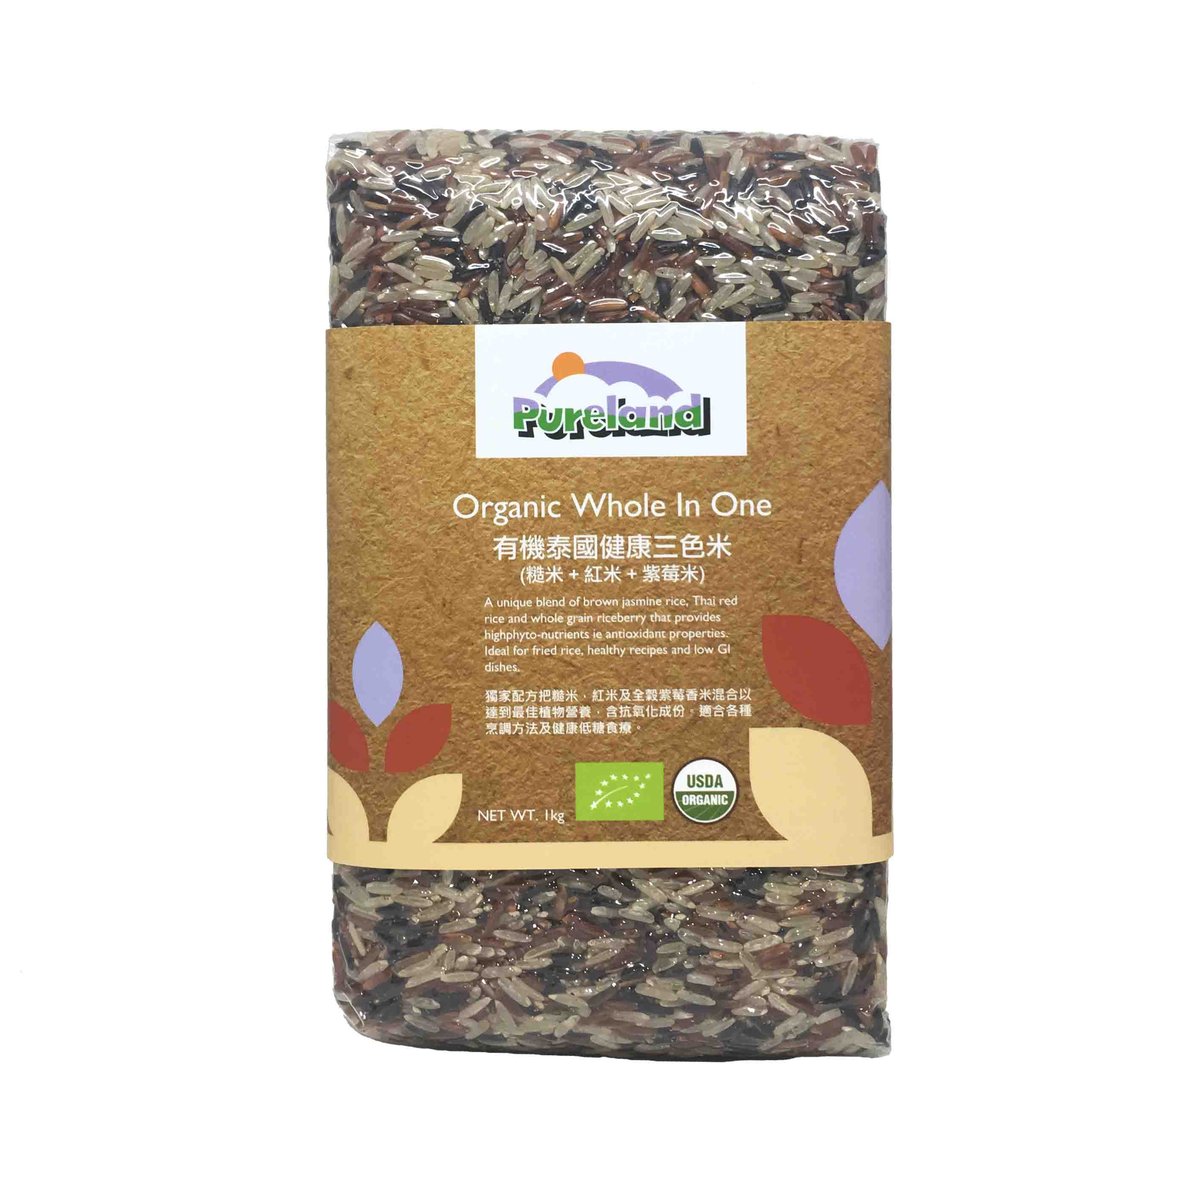 有機泰國健康三色米(糙米50%  紅米30% 紫莓米20%)